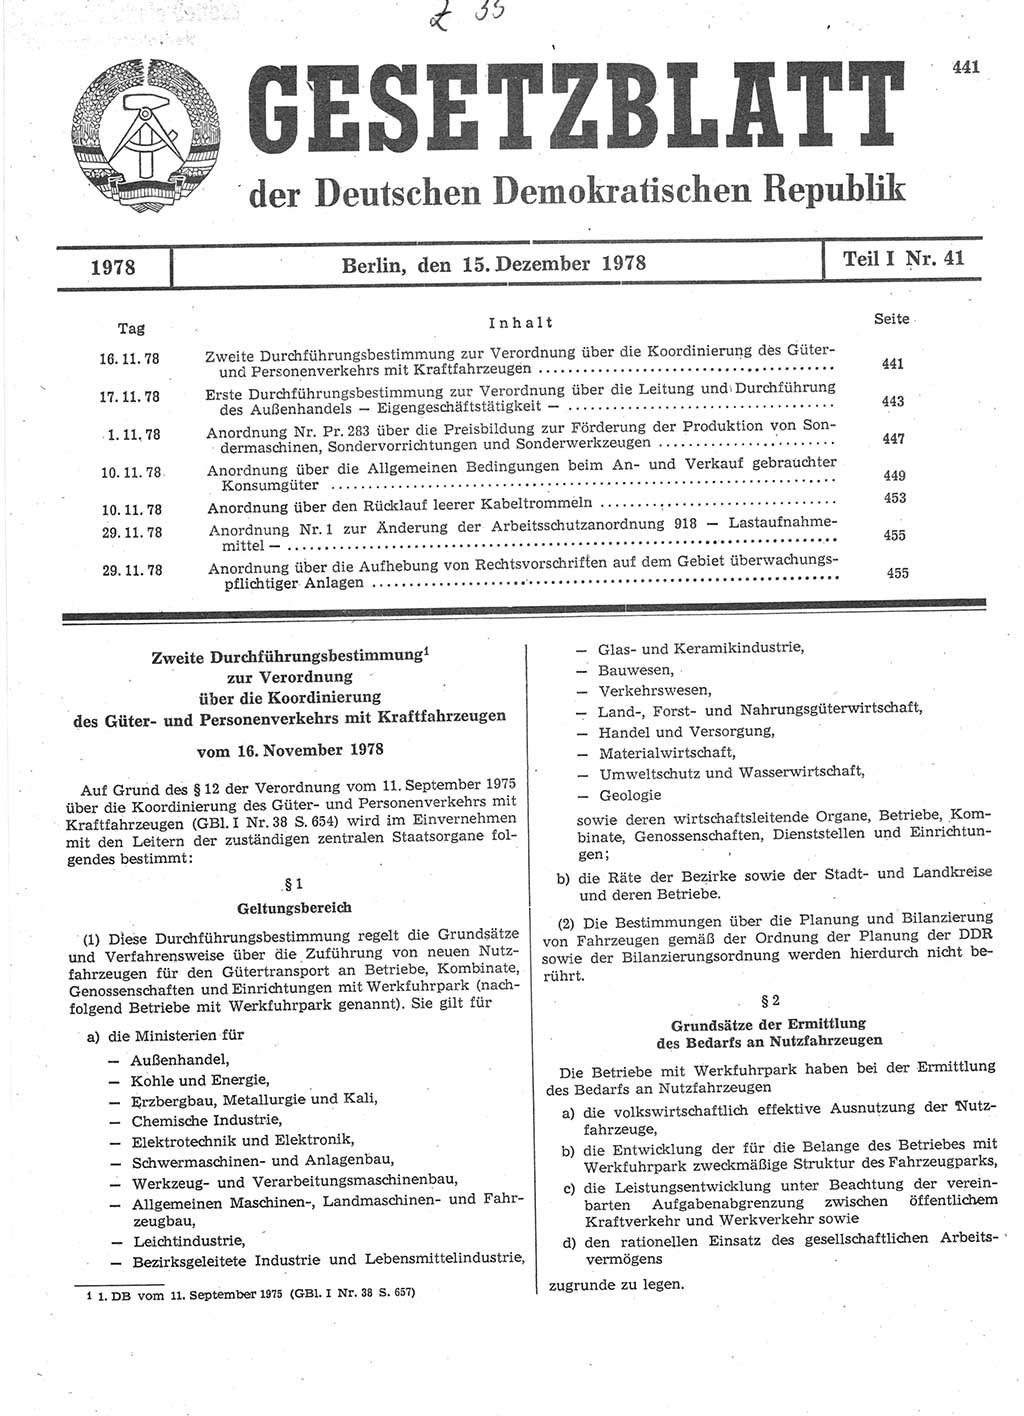 Gesetzblatt (GBl.) der Deutschen Demokratischen Republik (DDR) Teil Ⅰ 1978, Seite 441 (GBl. DDR Ⅰ 1978, S. 441)